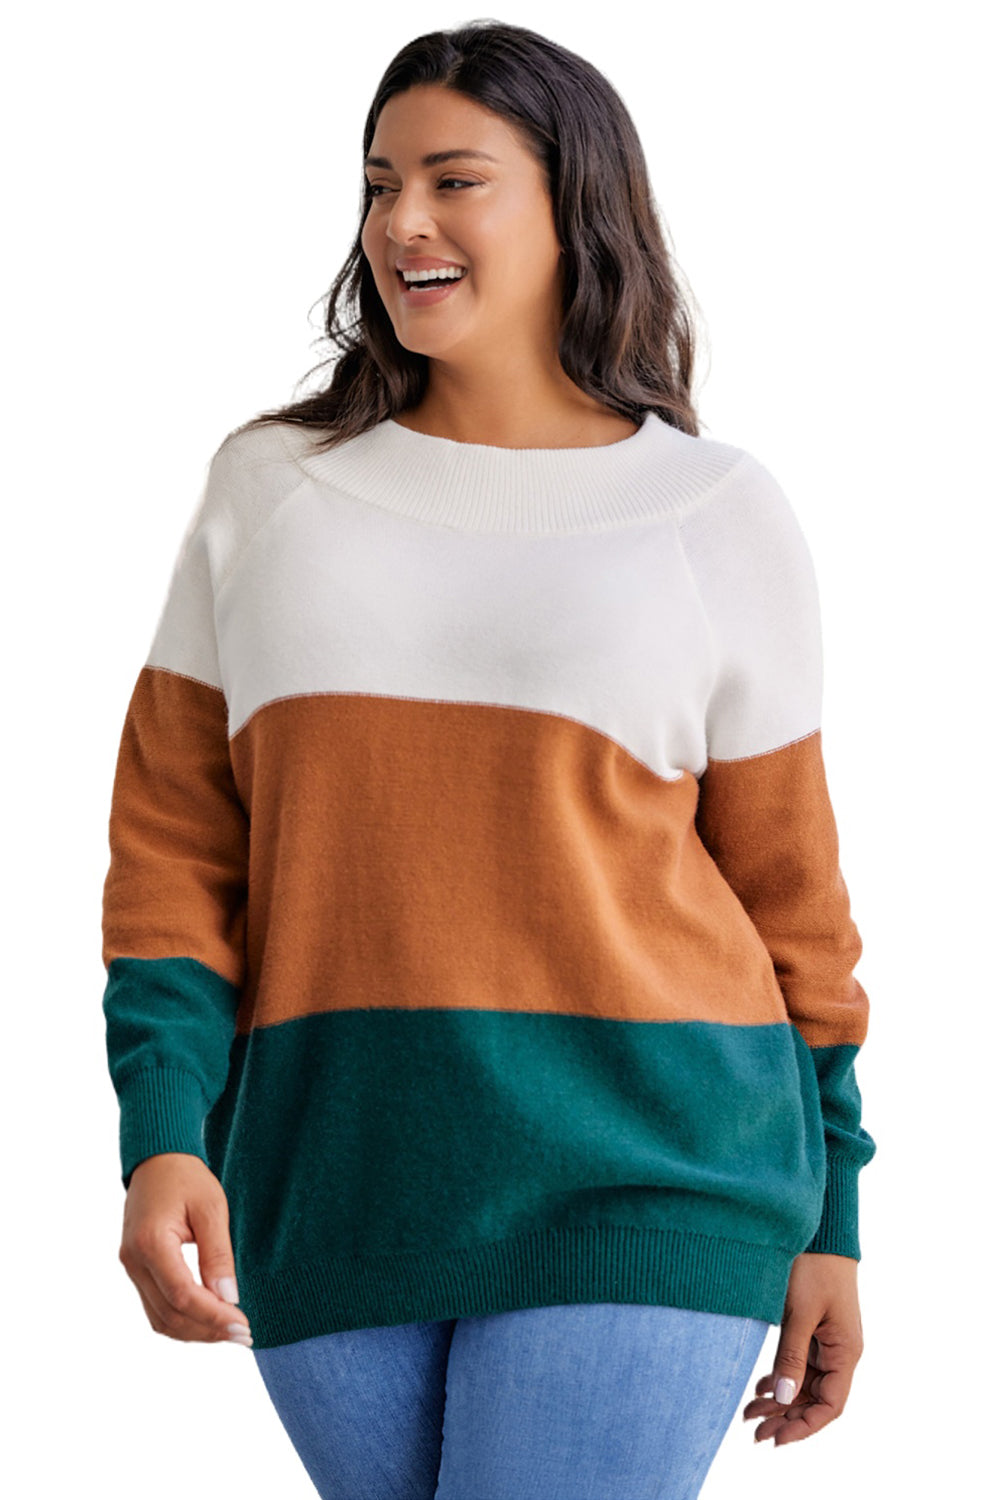 Smeđi pulover velike veličine s rebrastim obrubom u boji blokova